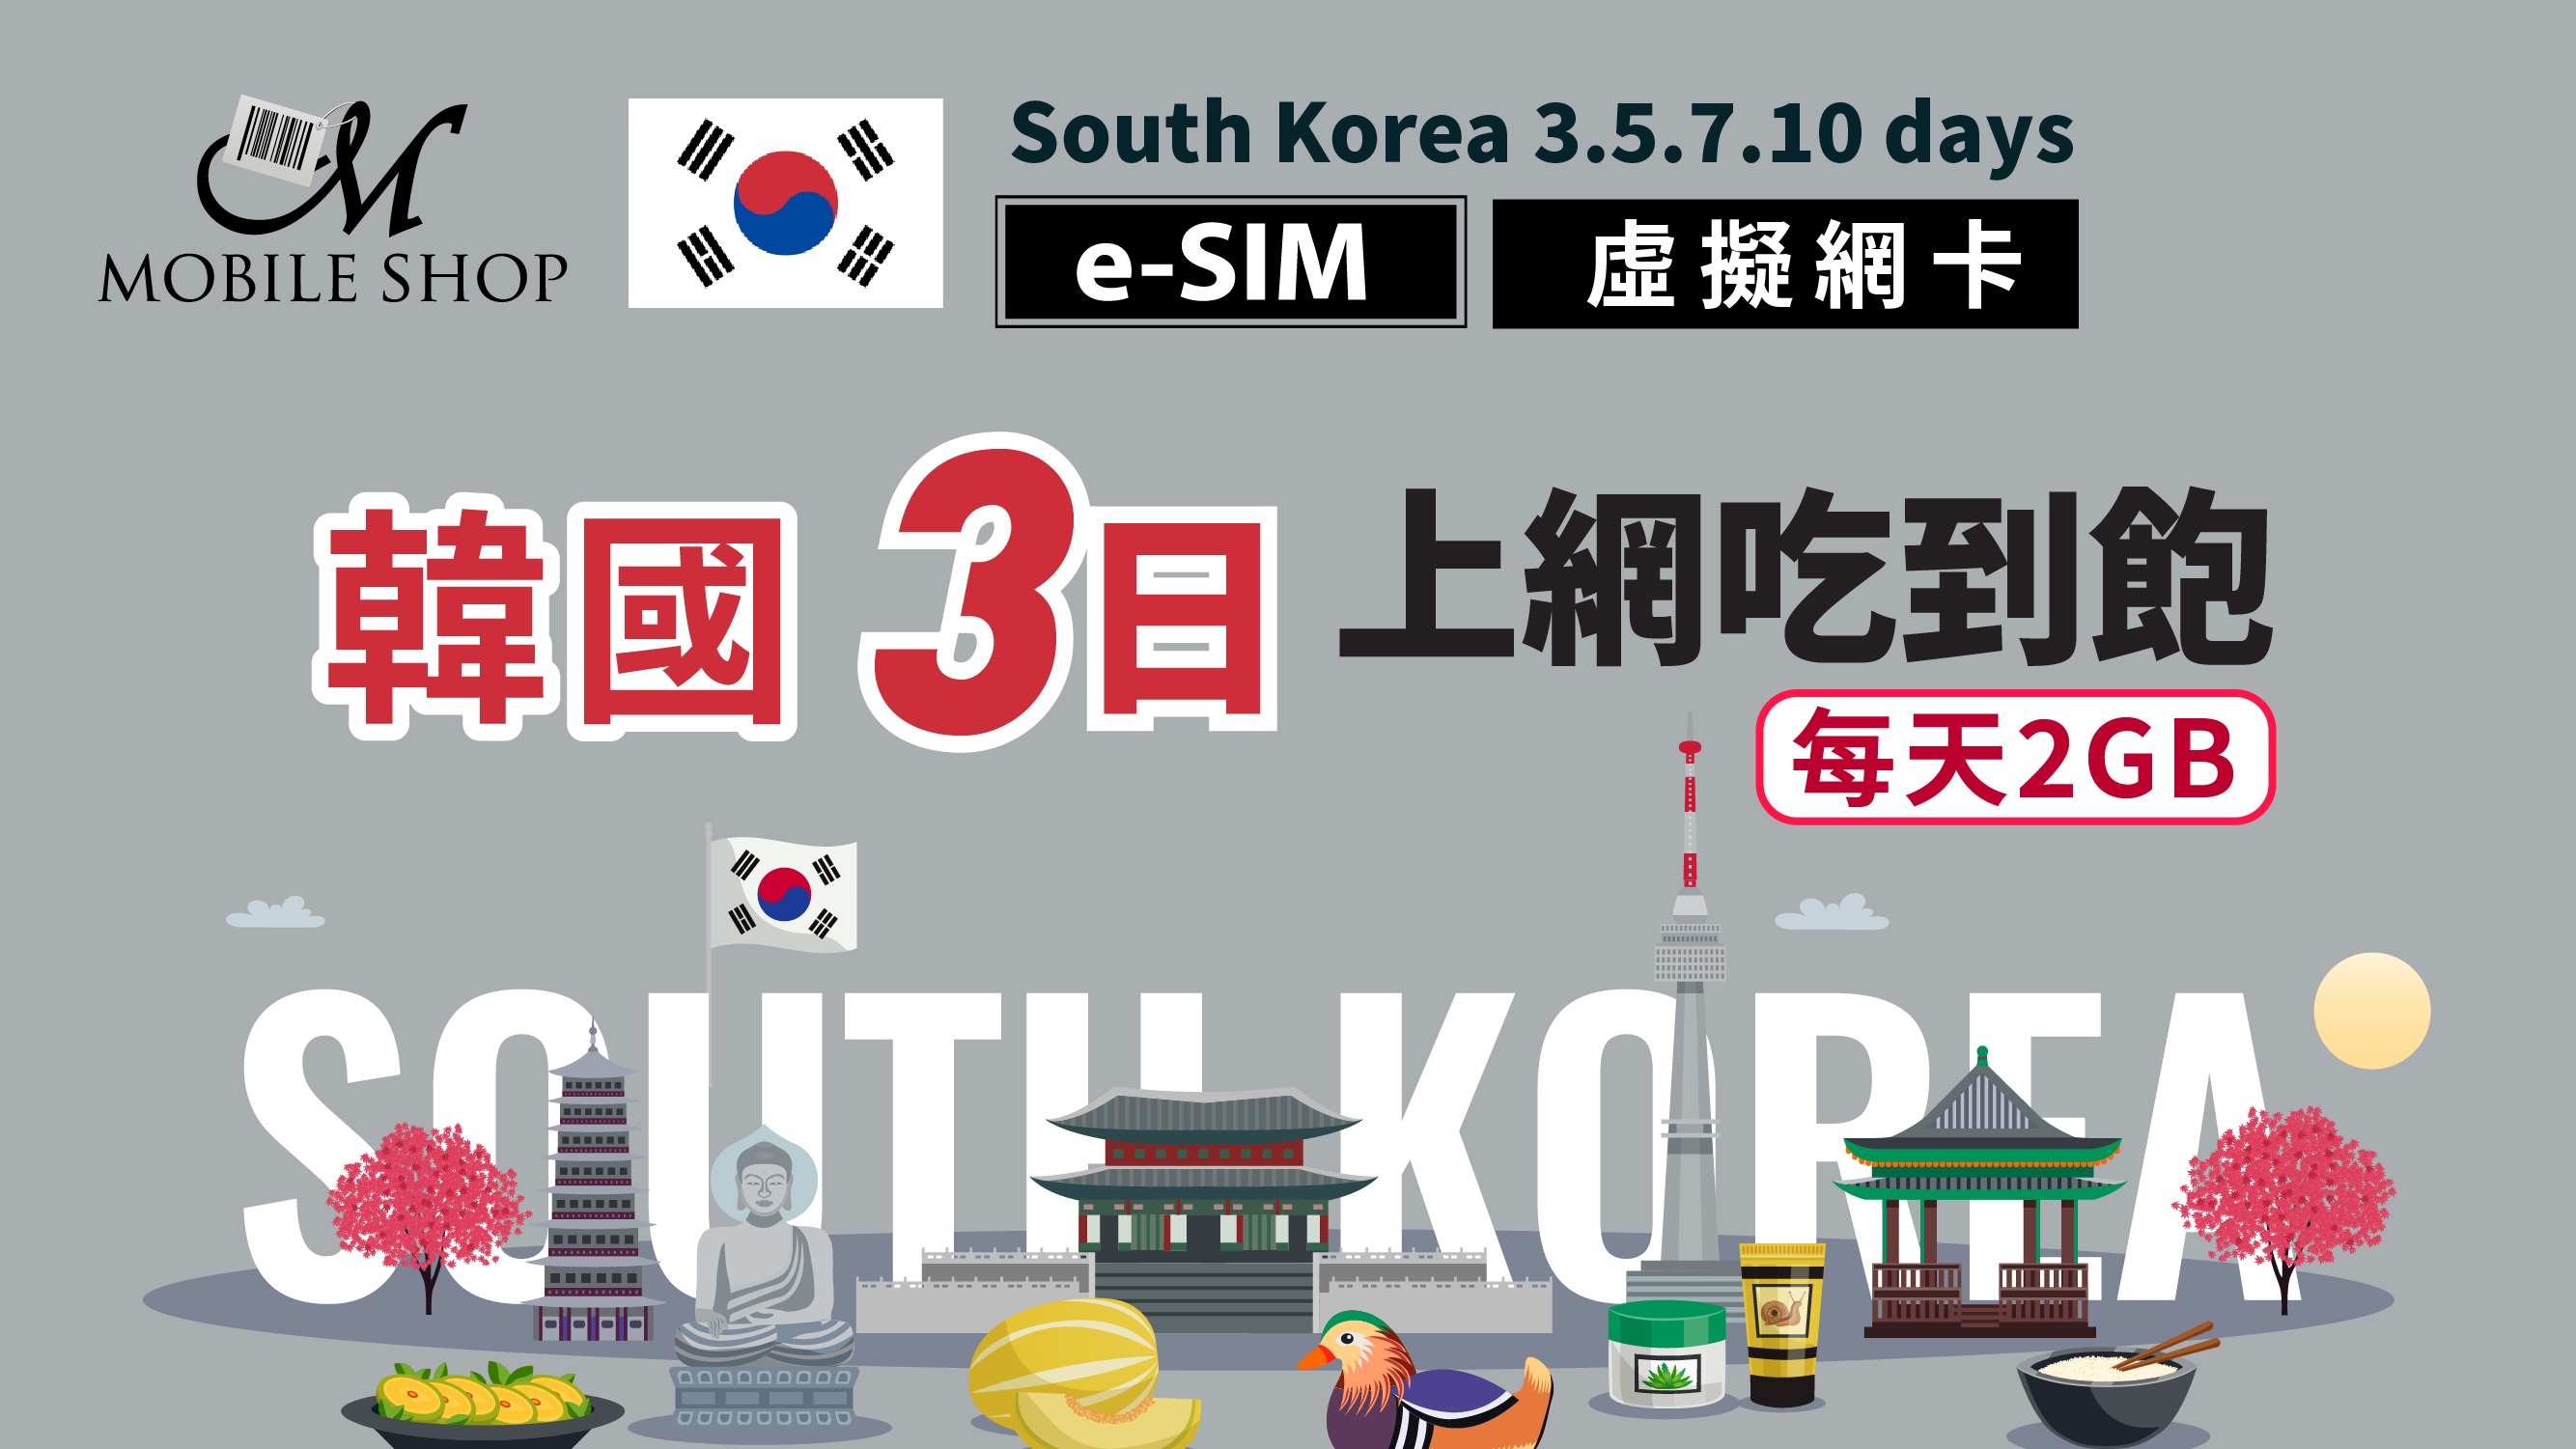 eSIM Korea 3days/2GB day unlimited data